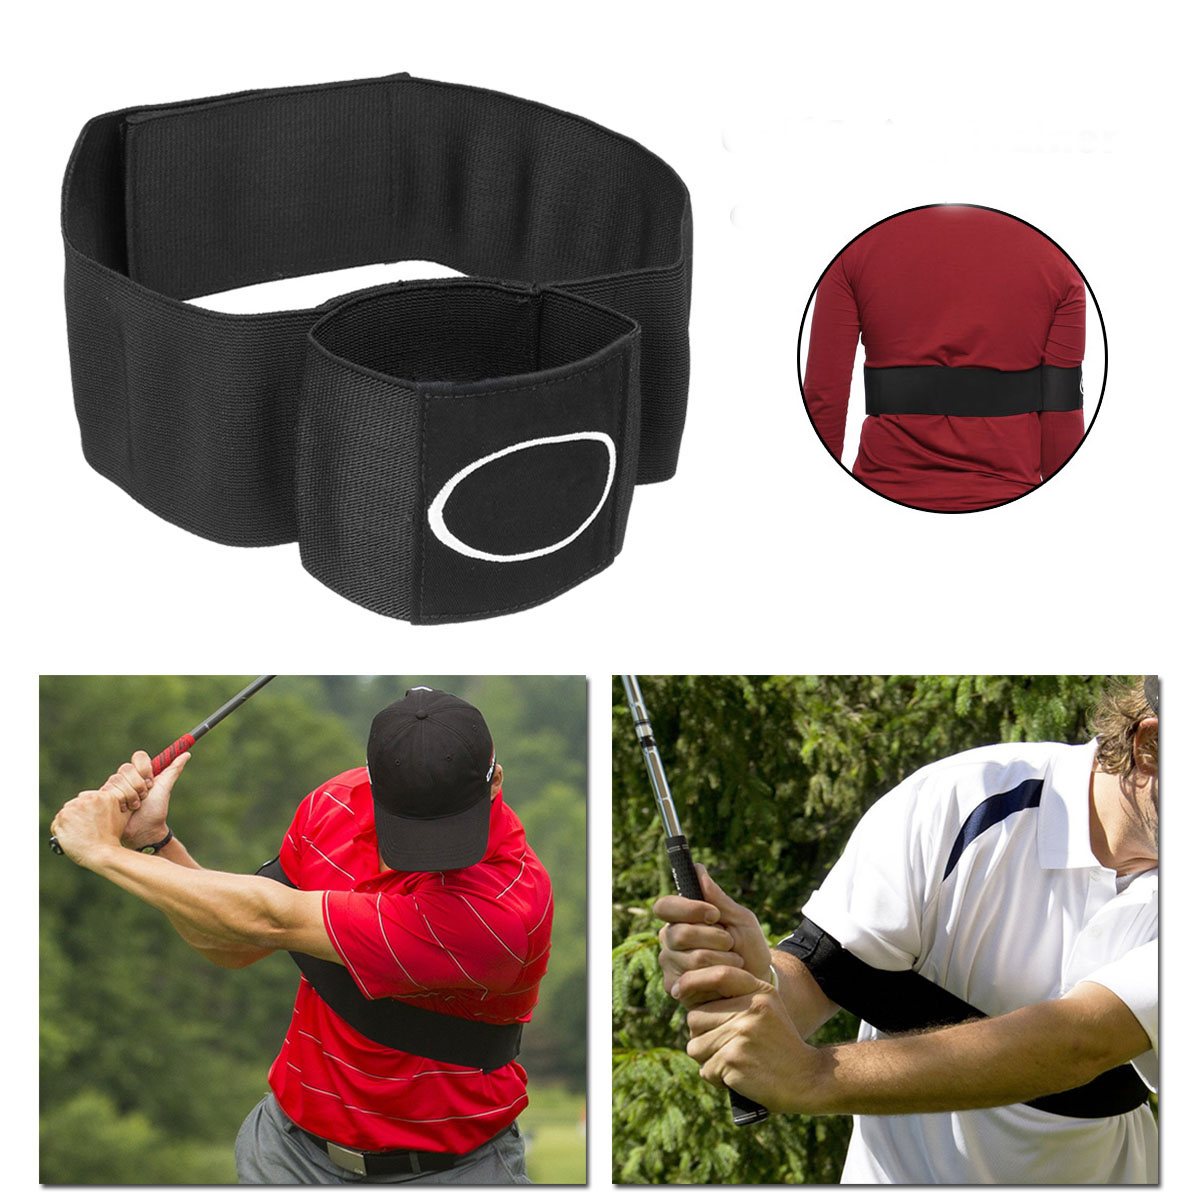 

Golf Connect Easy Swing Trainer Спортивные тренировки Практика Помощи с мячом Ремешок с коррекцией осанки